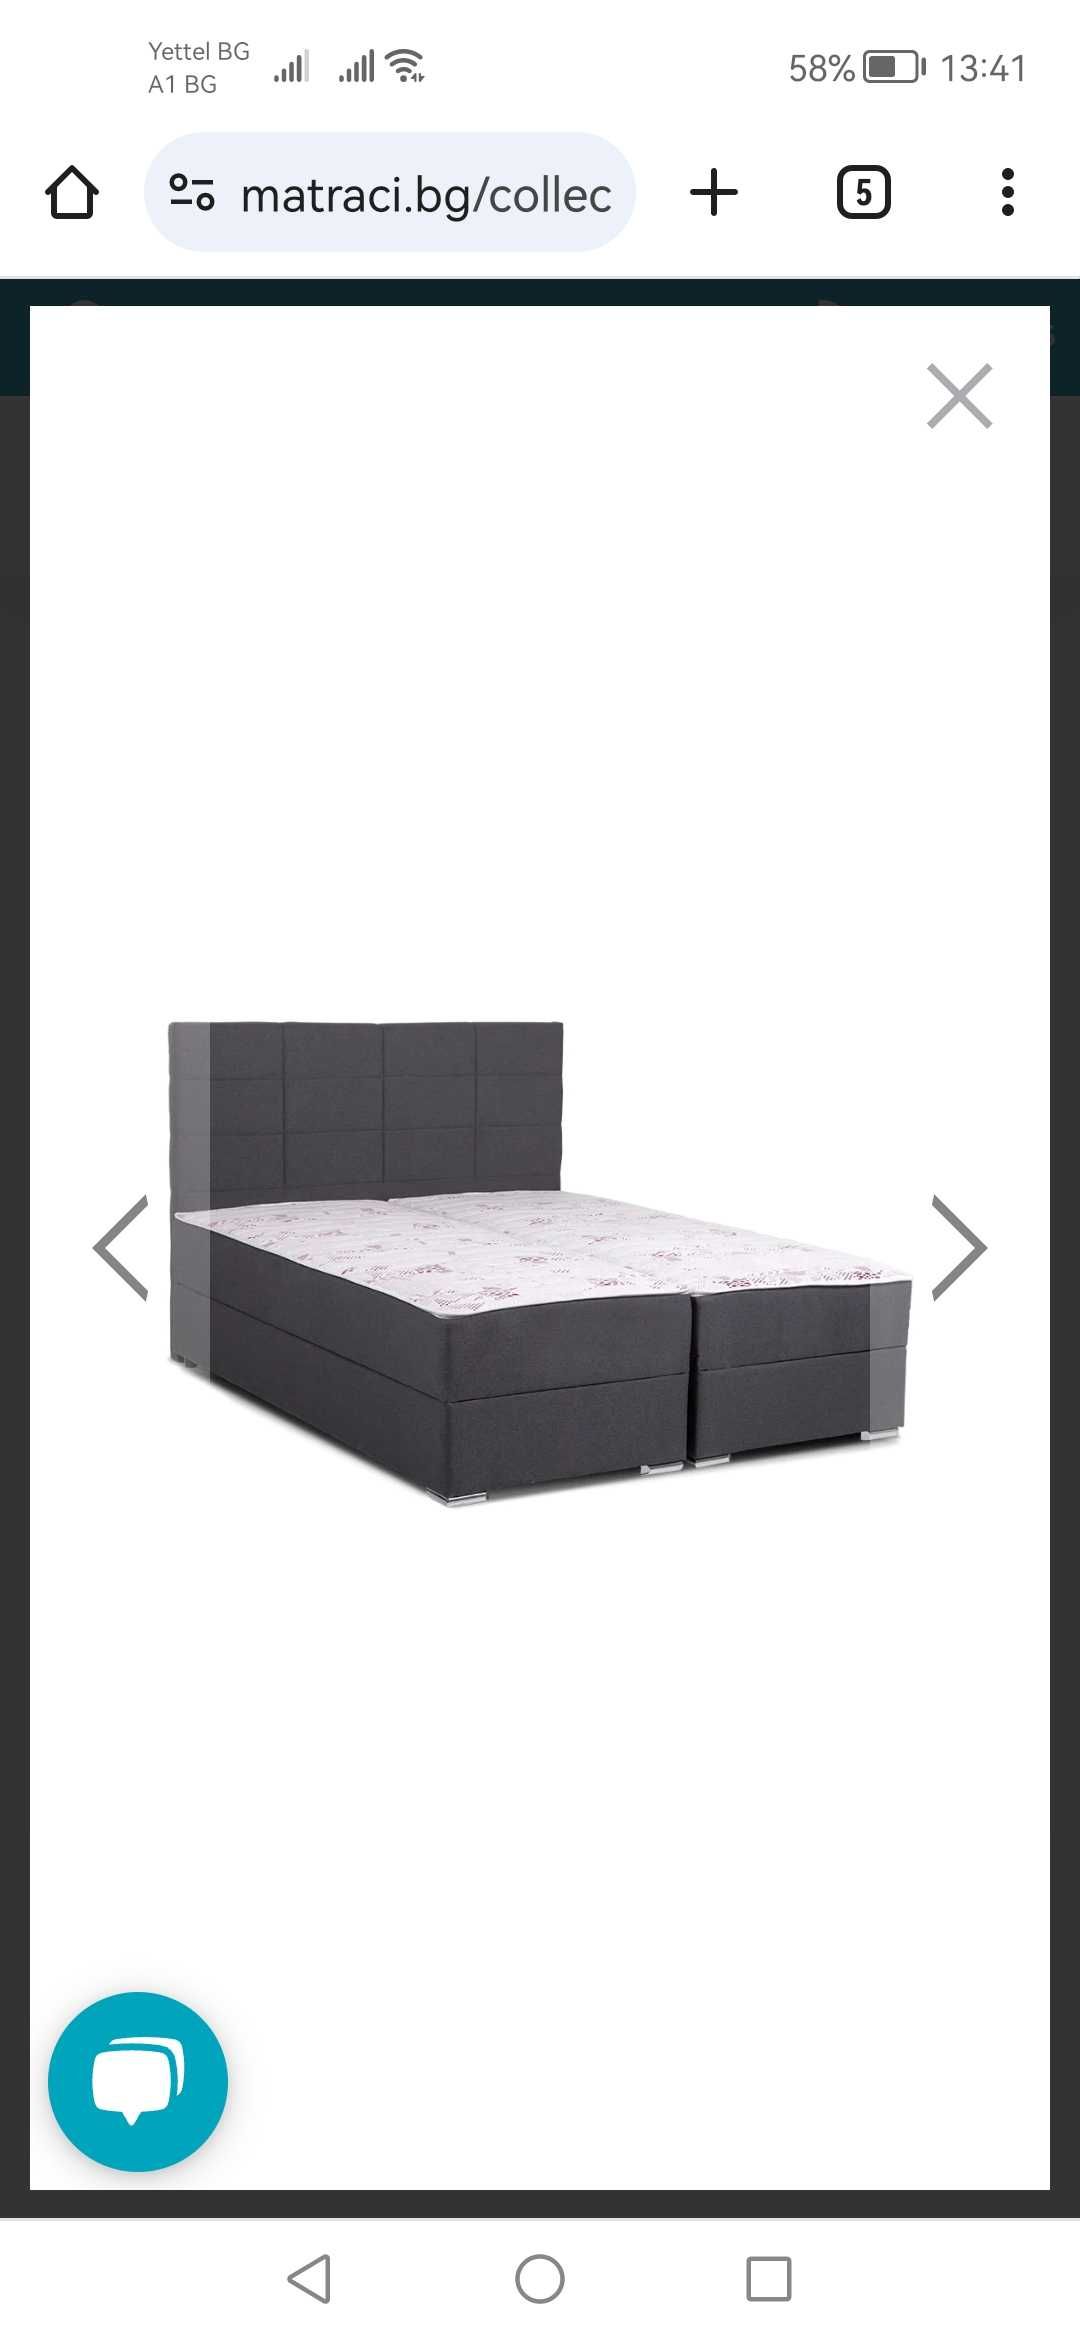 Легло с два матрака и топ матрак Double Comfort Dark Pocket 160/200 см